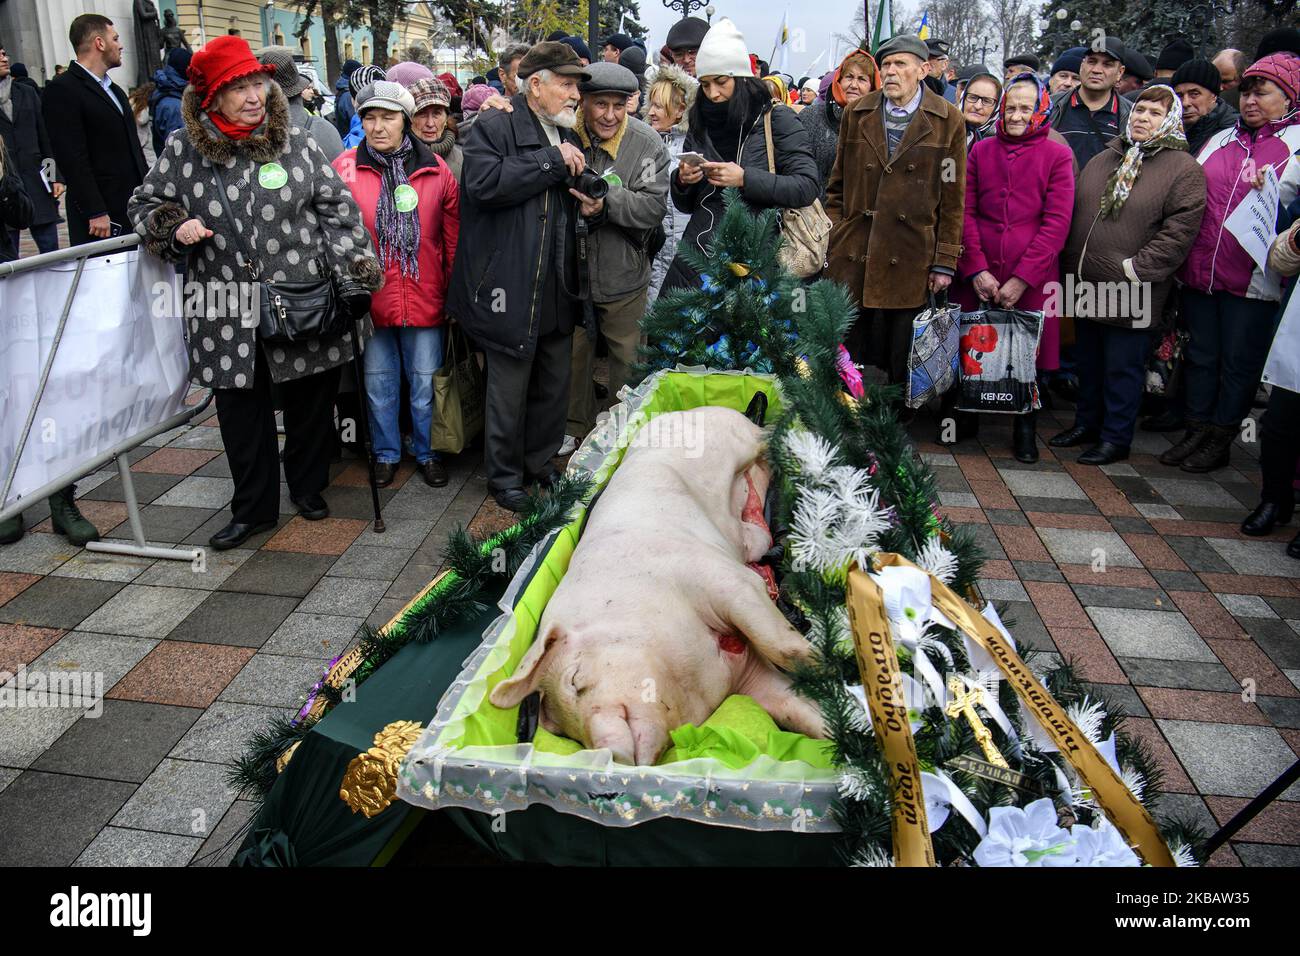 Totes Schwein in einem Sarg, das symbolisch für die Beerdigung der Tierhaltung während der Demonstration steht. Ukrainische Bauern protestieren vor dem ukrainischen Parlament (Verkhovna Rada) gegen die Öffnung eines Landmarktes und den Verkauf von Land in der Ukraine. Kiew, Ukraine. 13-11-2019 (Foto von Maxym Marusenko/NurPhoto) Stockfoto